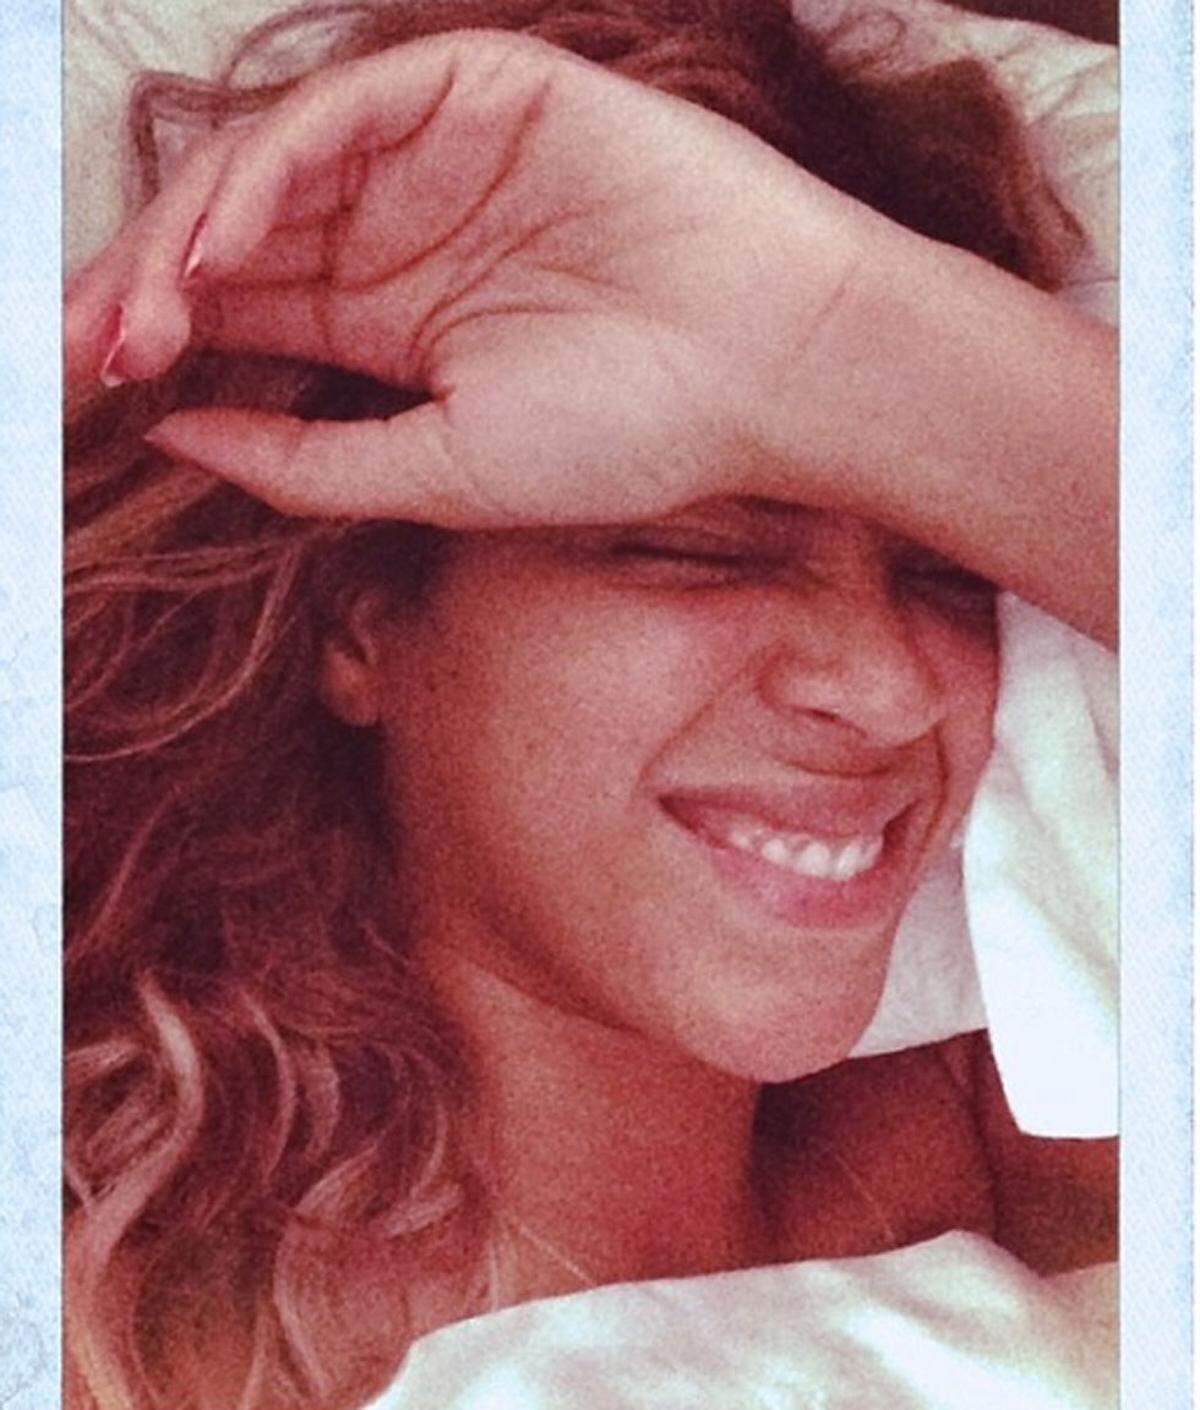 Im Bett und ungeschminkt zeigen sich Stars wie Beyoncé  von ihrer scheinbar intimsten und natürlichsten Seite. Diese Art der Selbstinszenierung nennt sich Bedstagram.